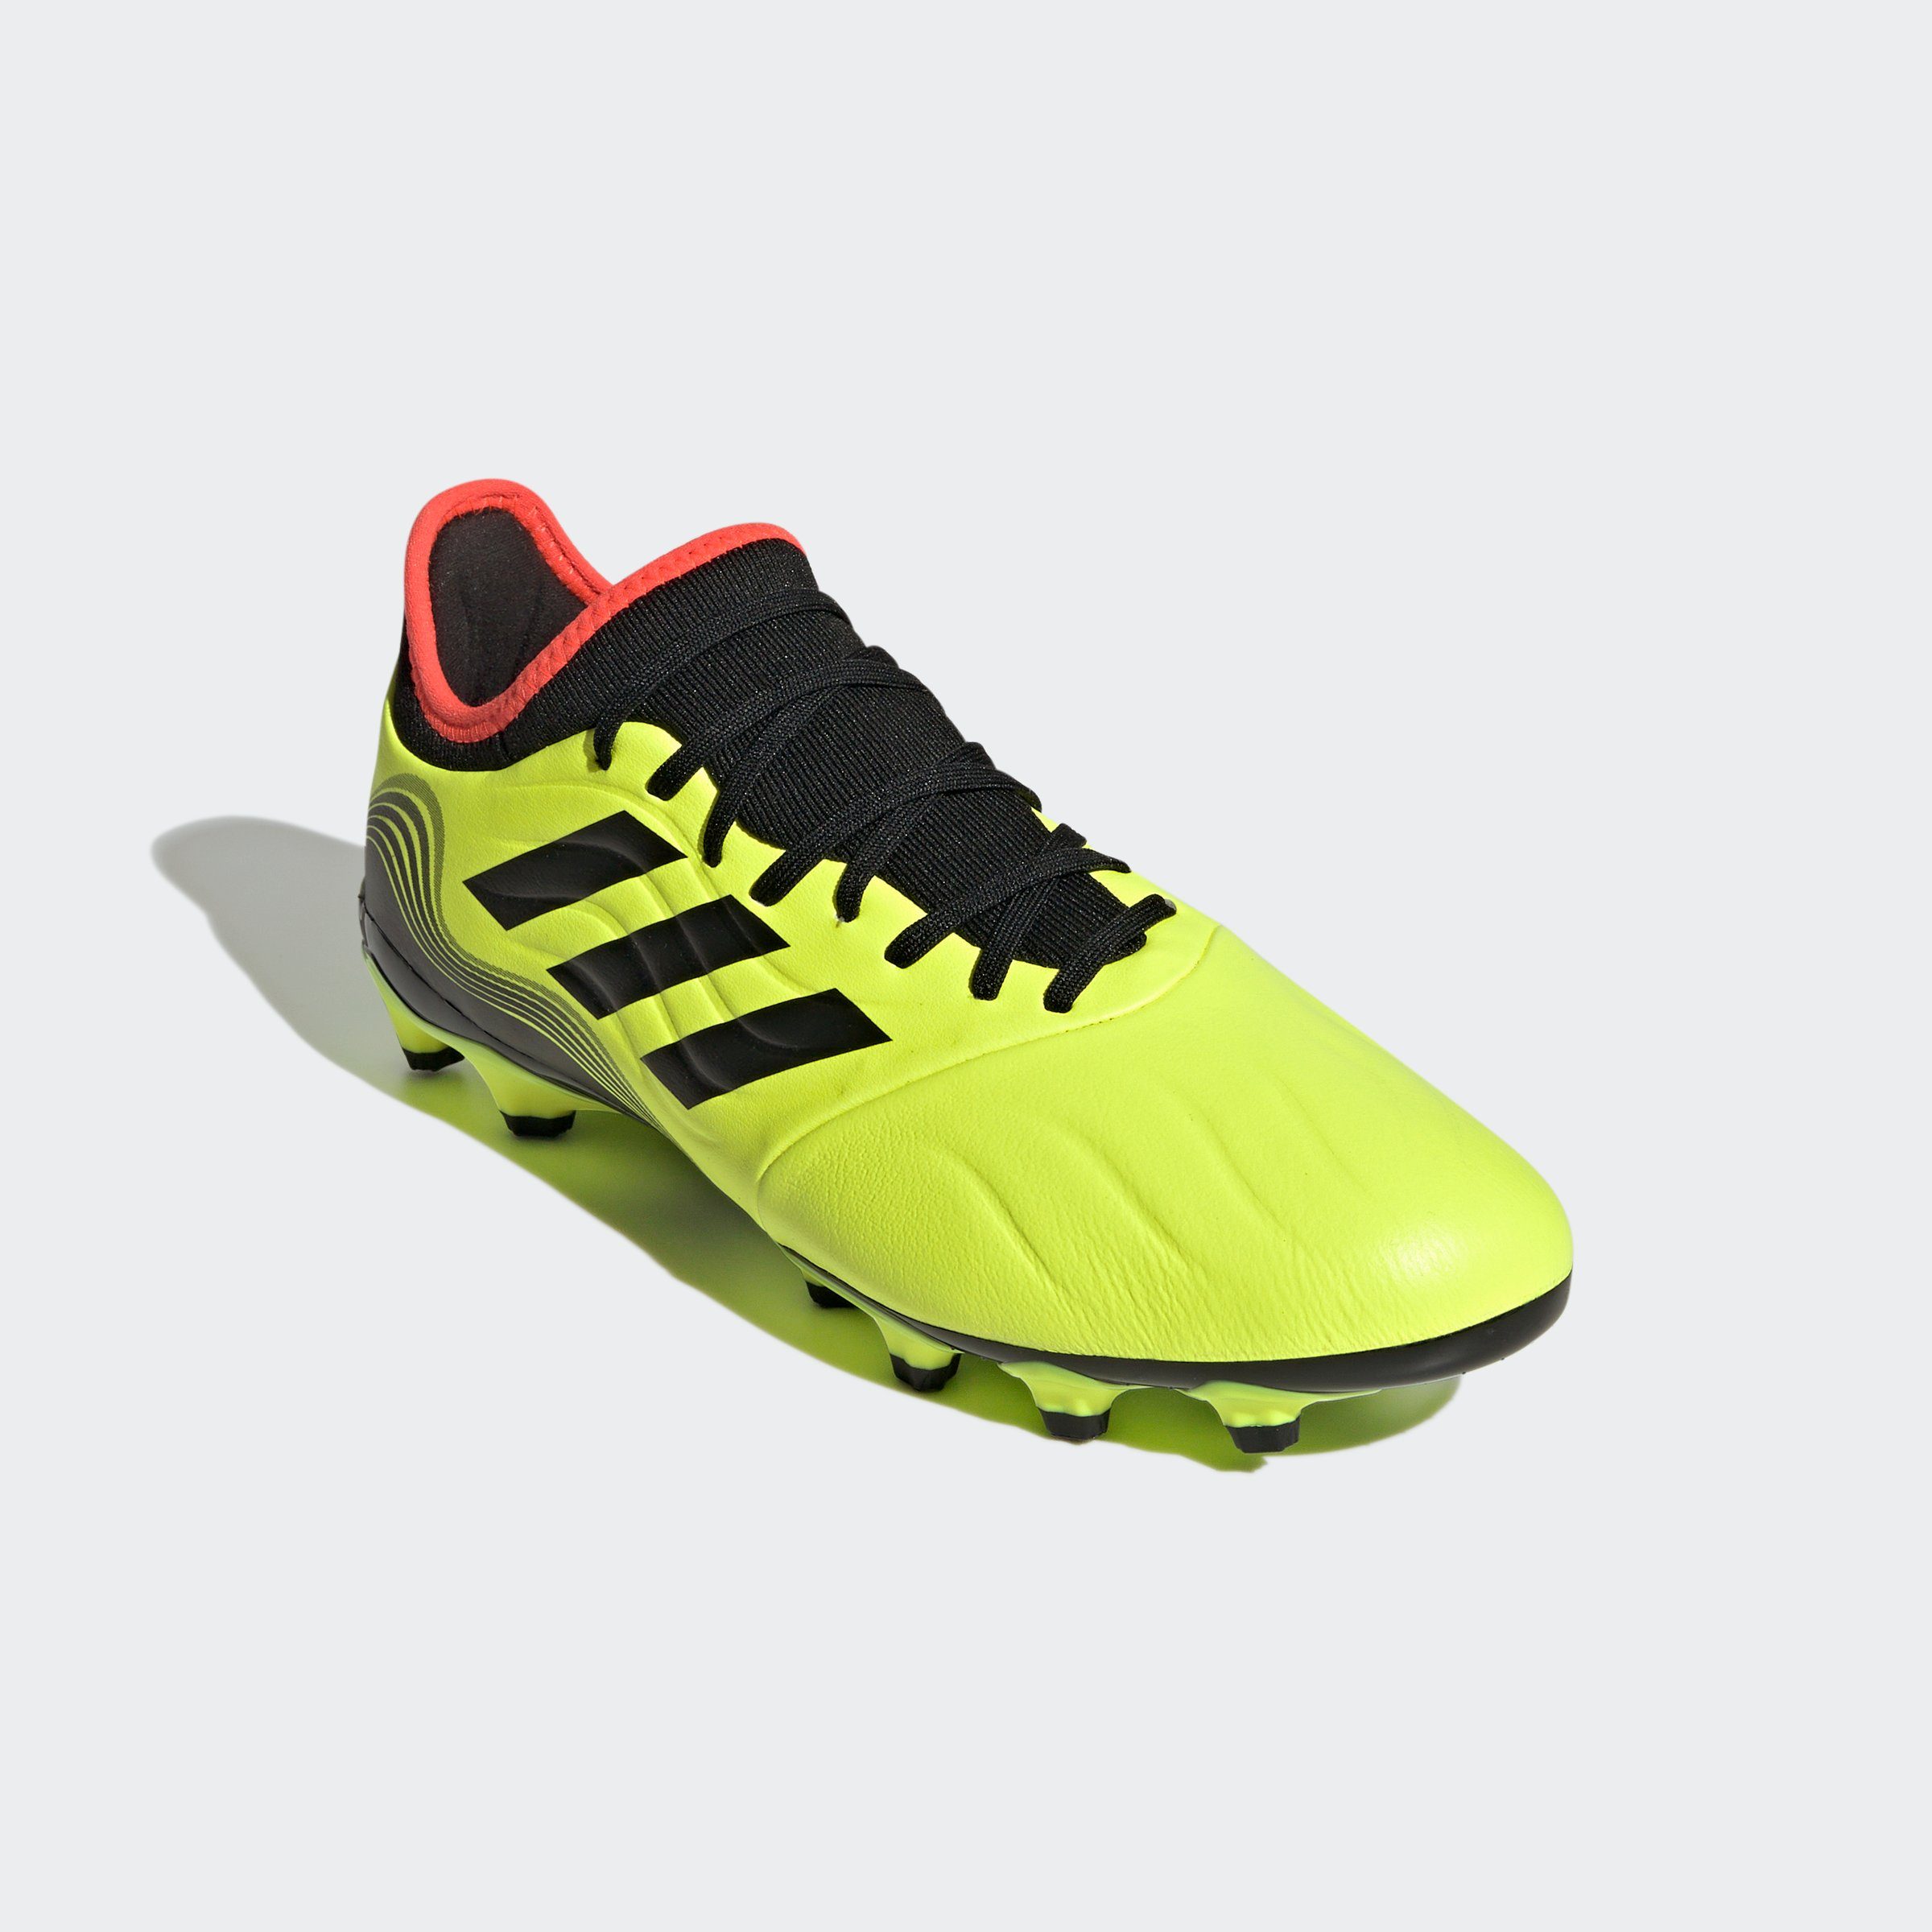 adidas Kunstrasen-Fußballschuhe » Noppenschuhe online kaufen | OTTO